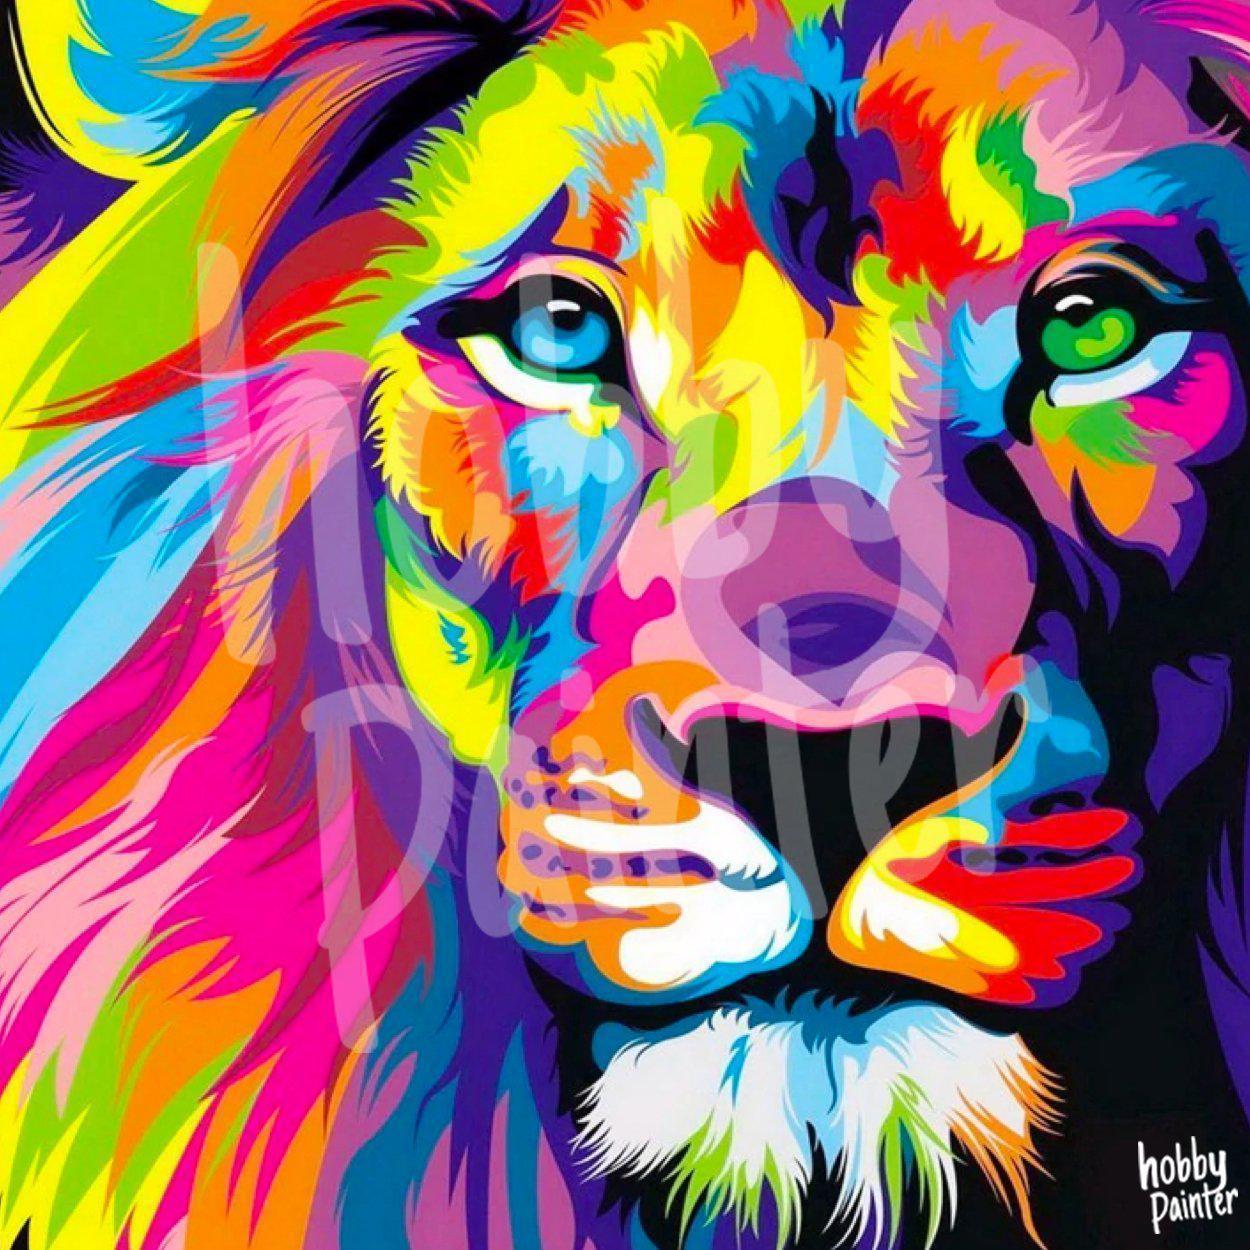 Diamond Painting Leeuw met kleuren voorbeeld Hobby Painter